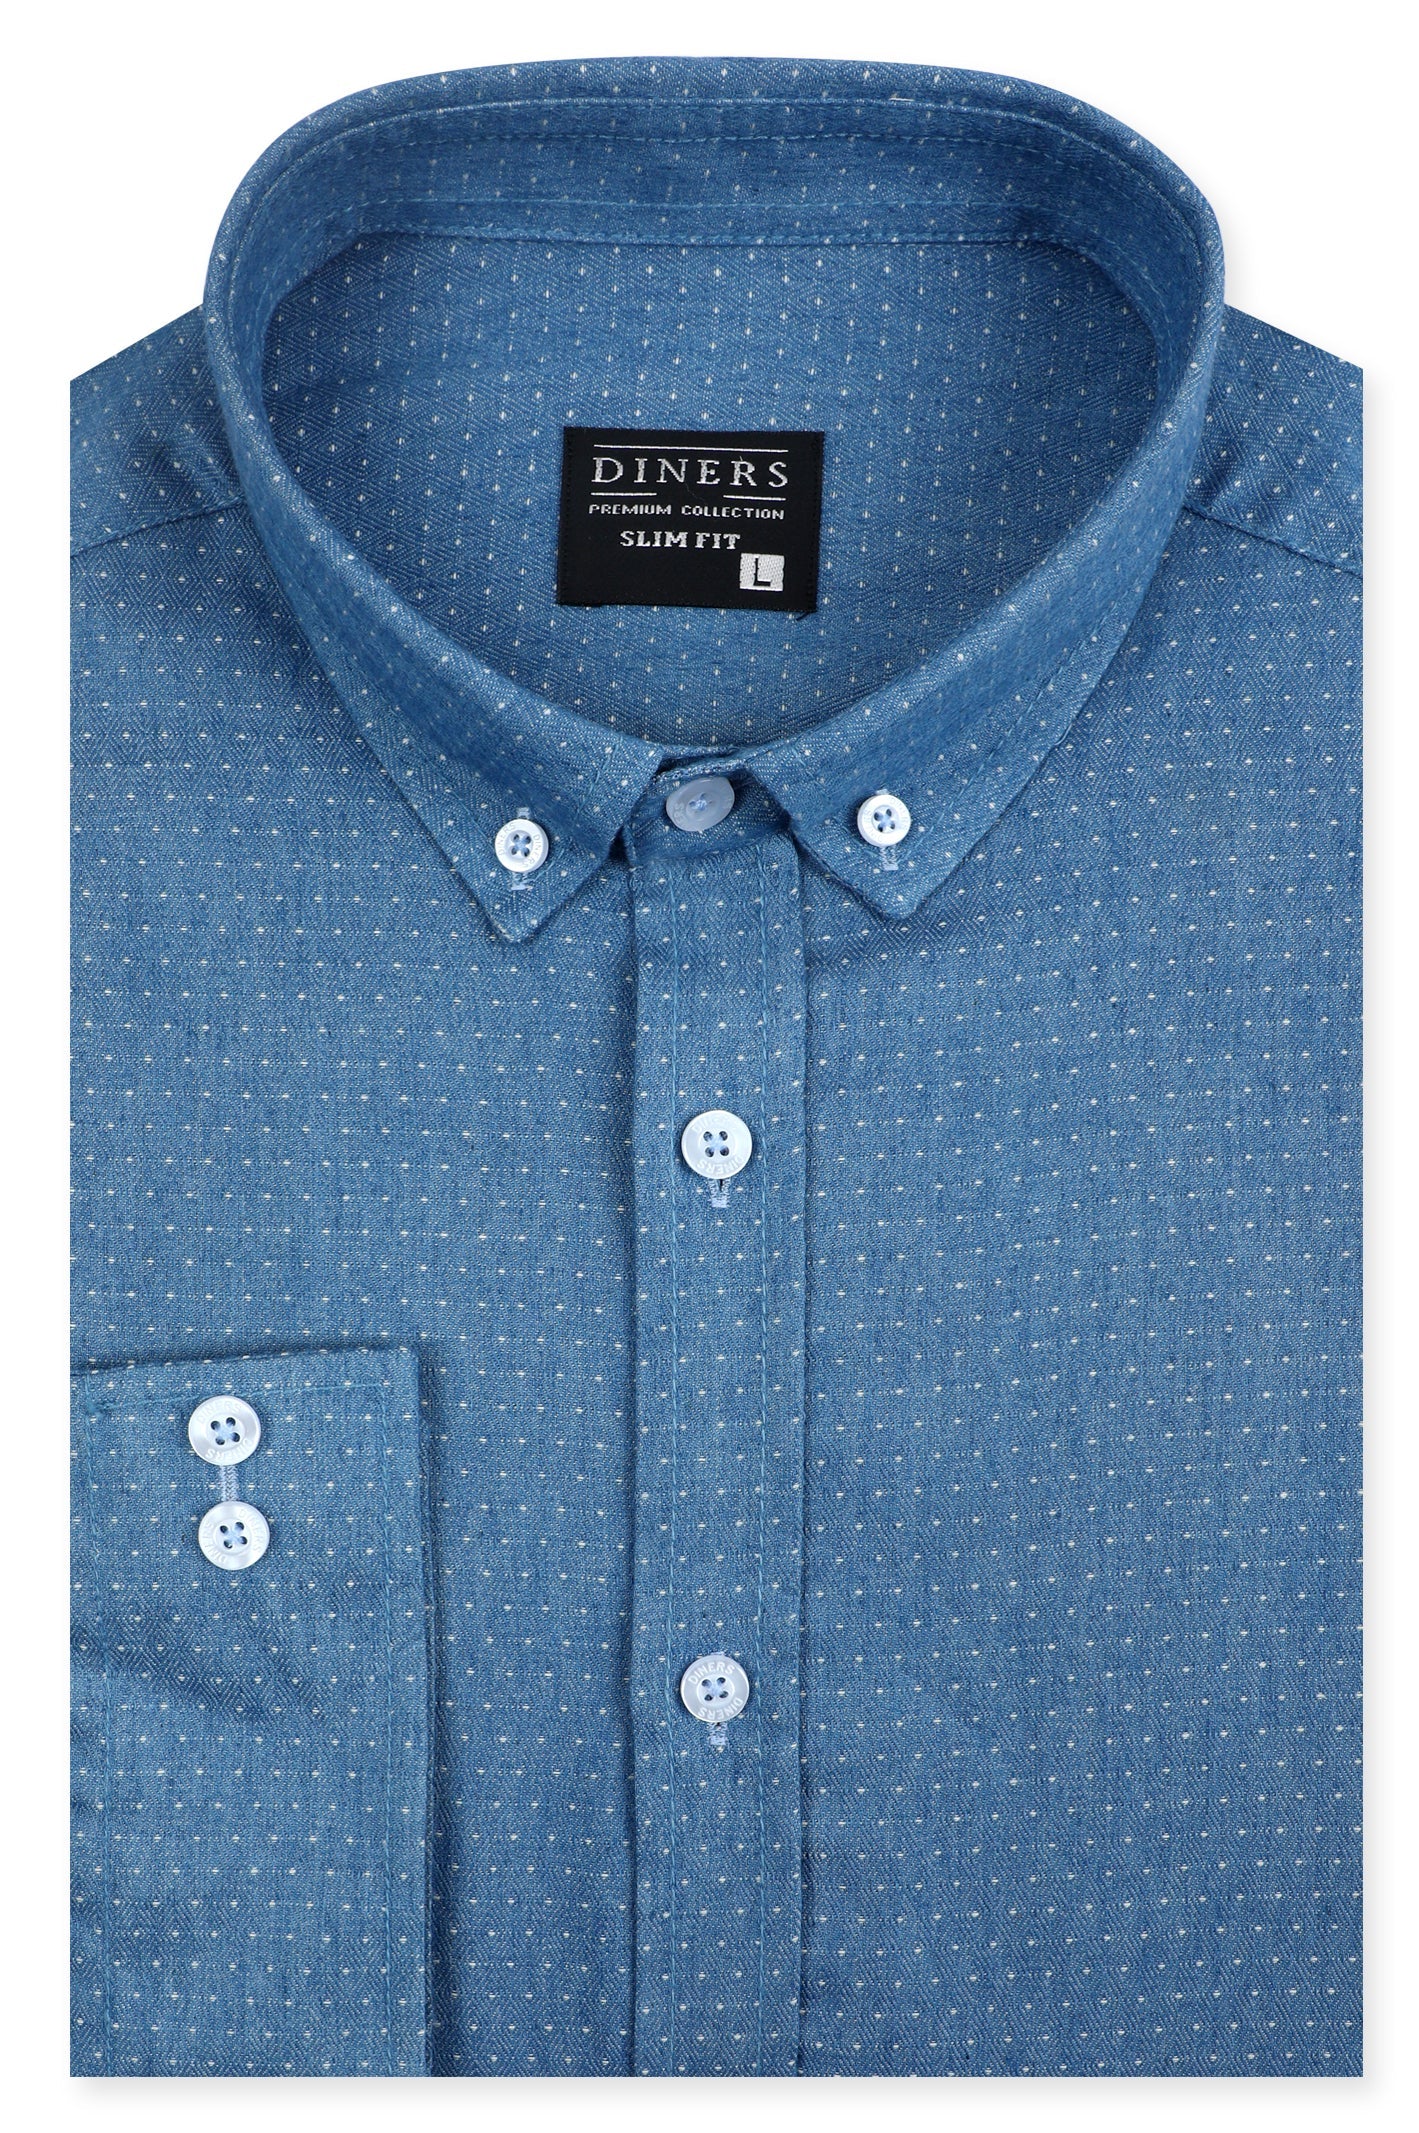 Casual Shirt in L-Blue SKU: AM24531-L-BLUE - Diners